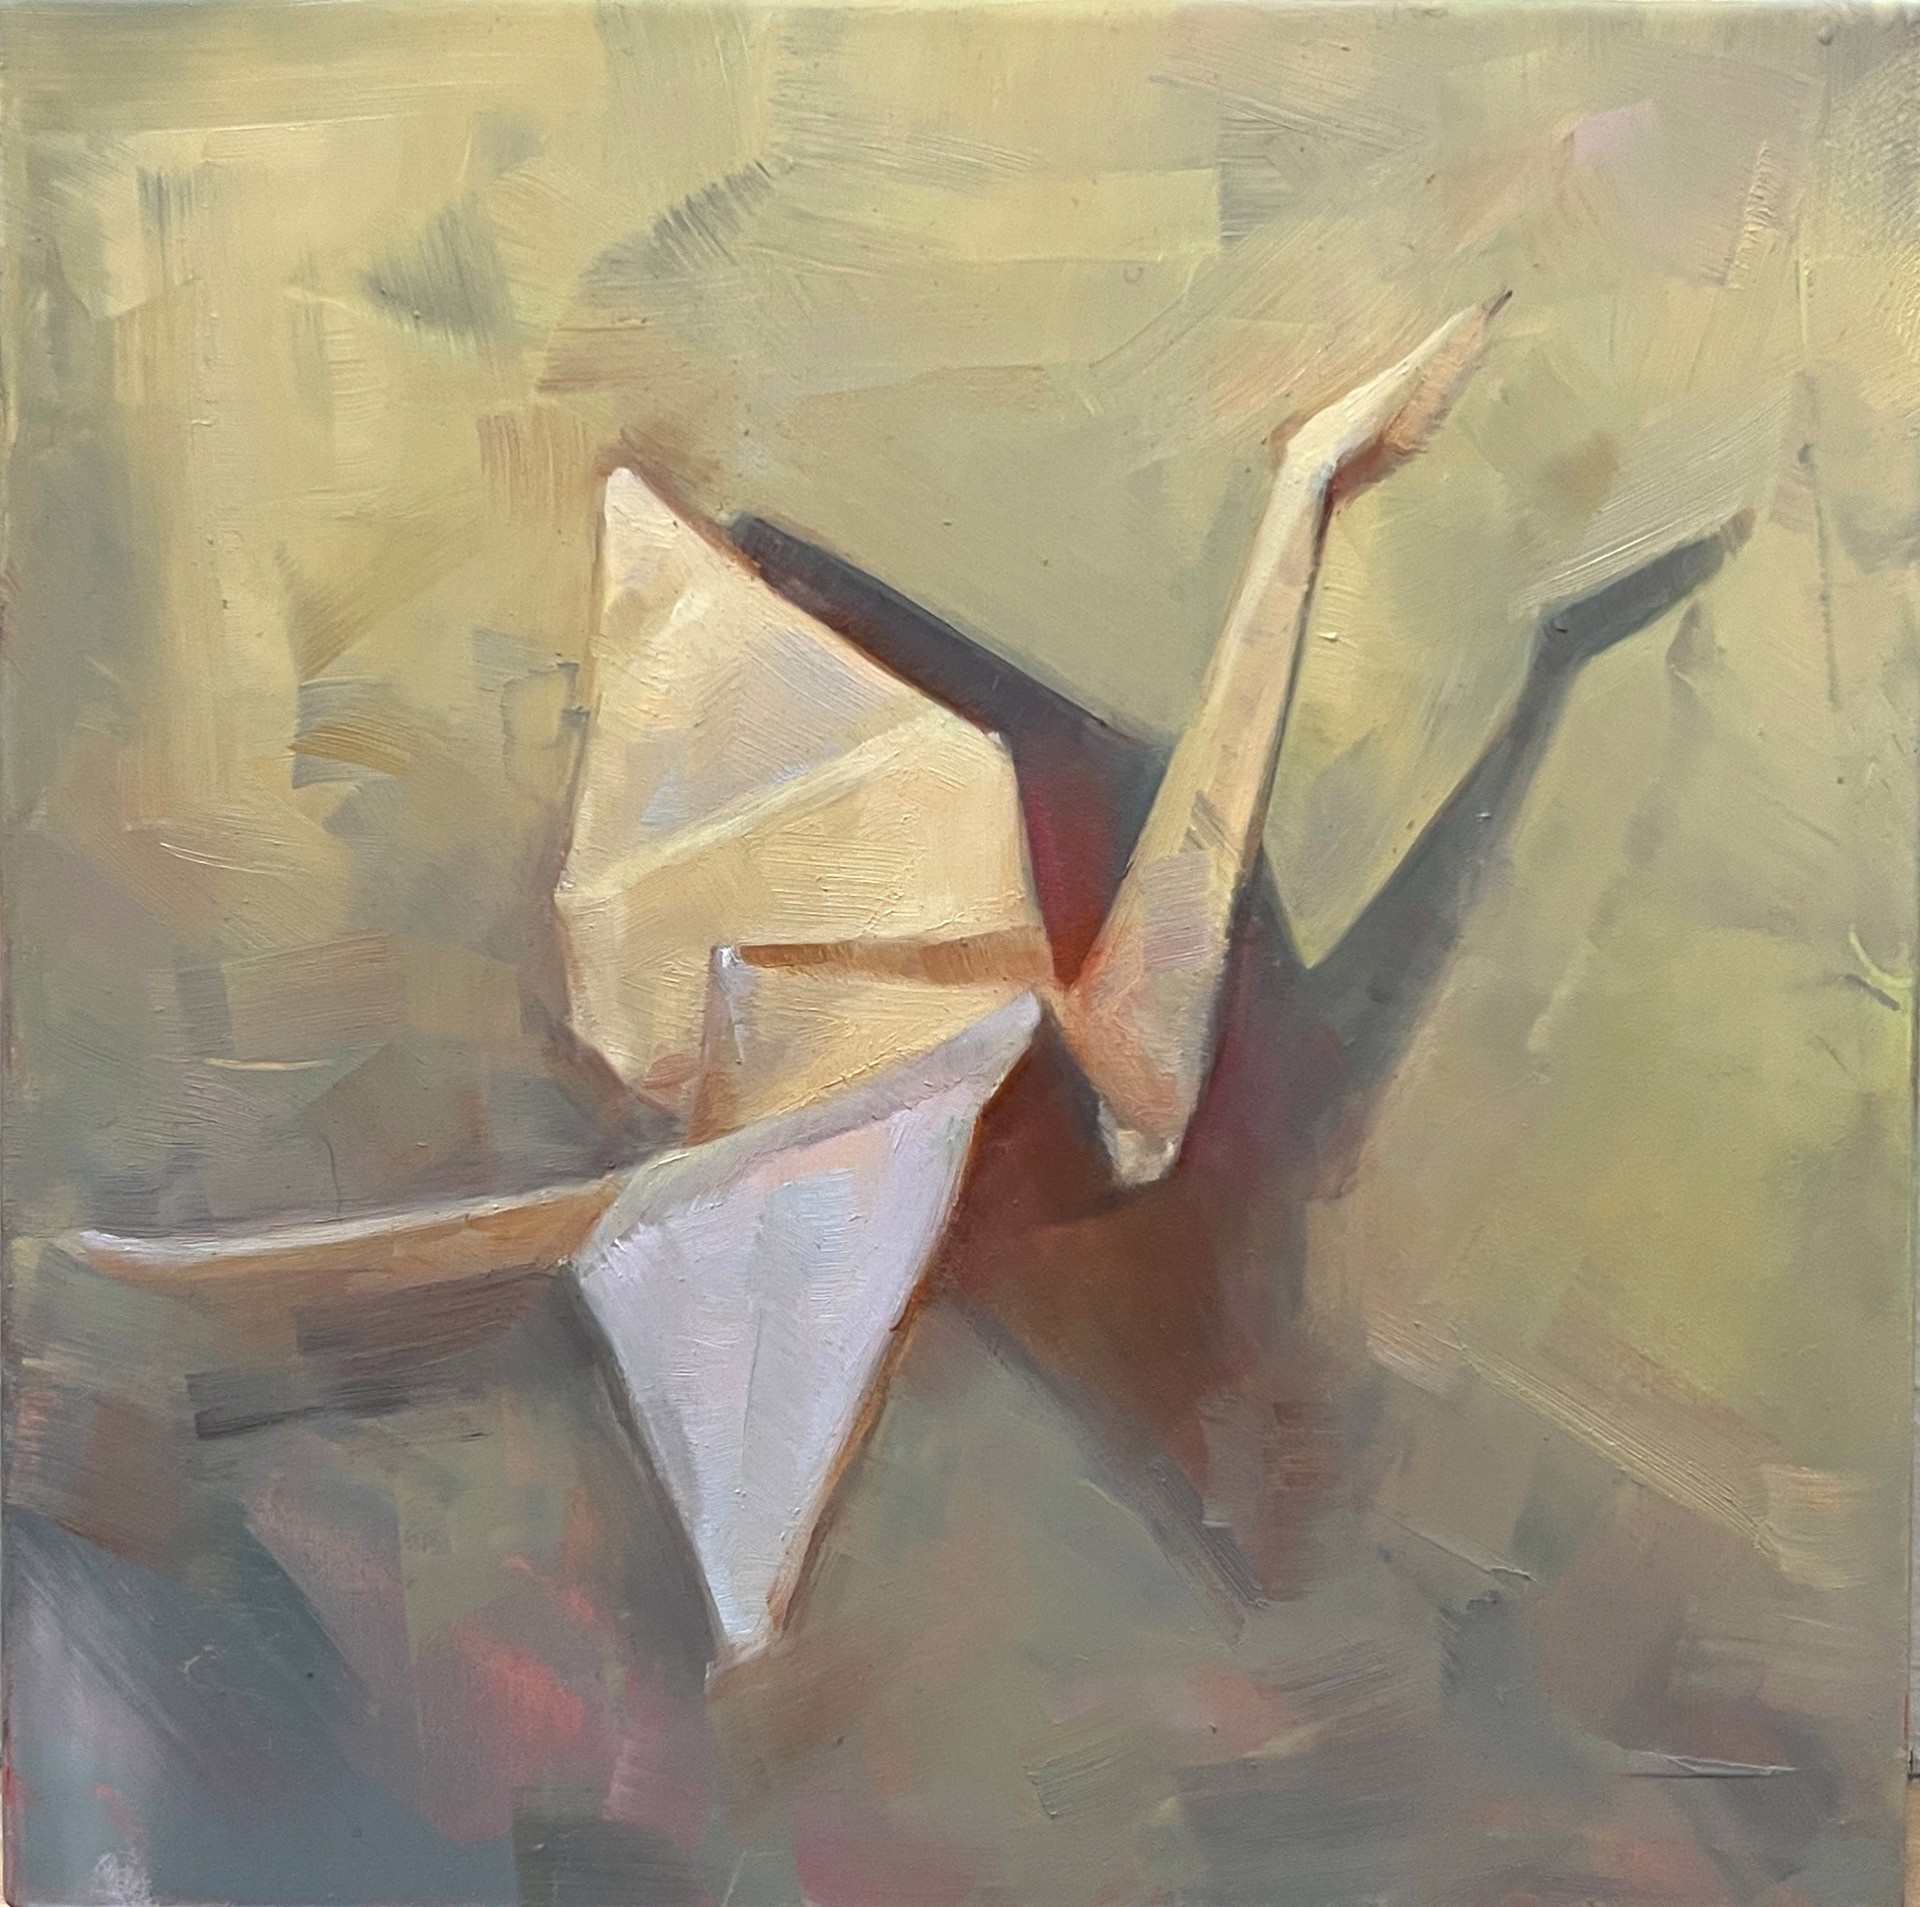 Crane 1 by Alla Bartoshchuk